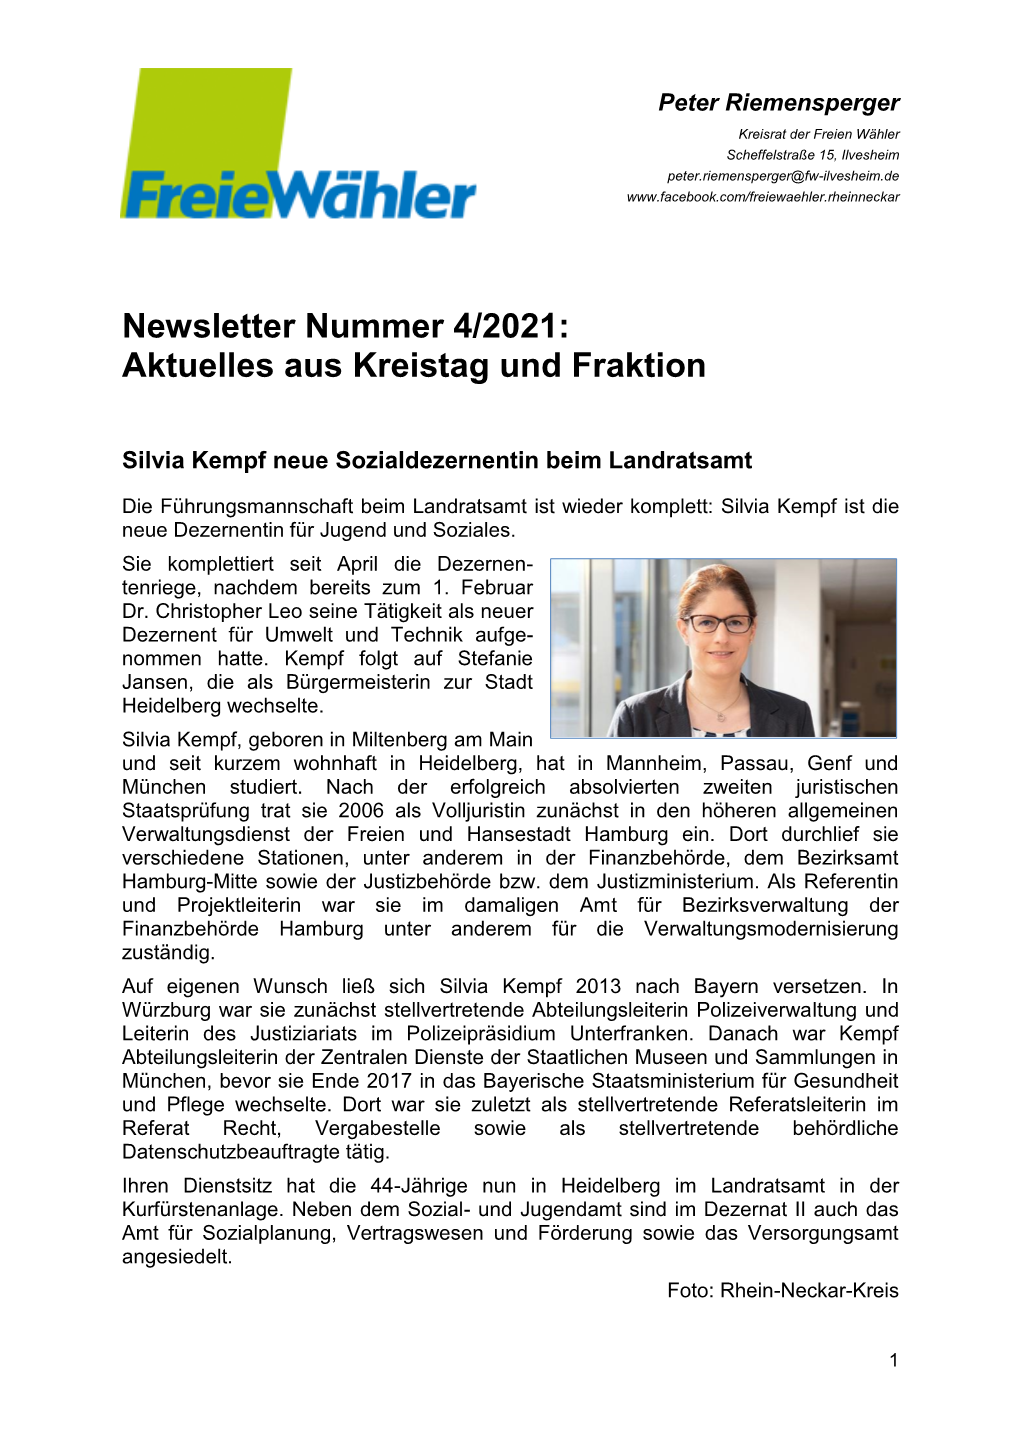 Newsletter Aus Dem Kreistag 04/2021